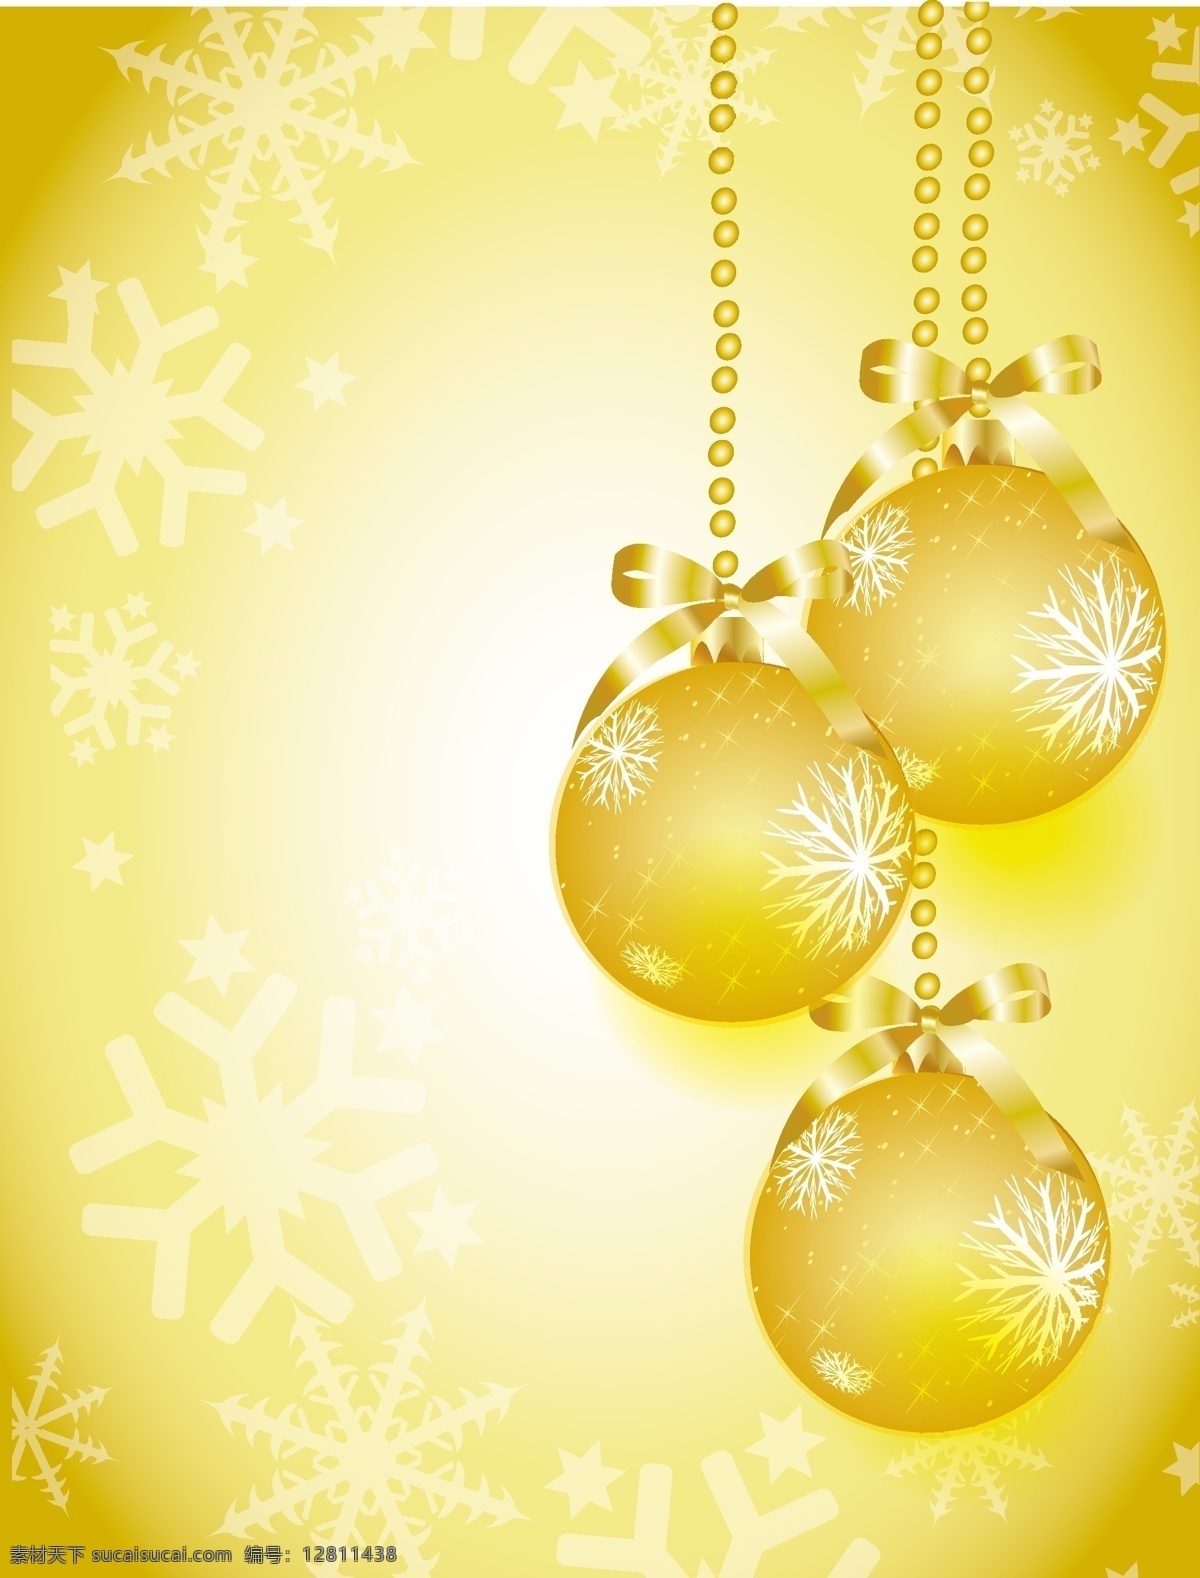 矢量 华丽 雪花 金色 背景 彩球 吊球 圣诞节 矢量素材 饰品 节日素材